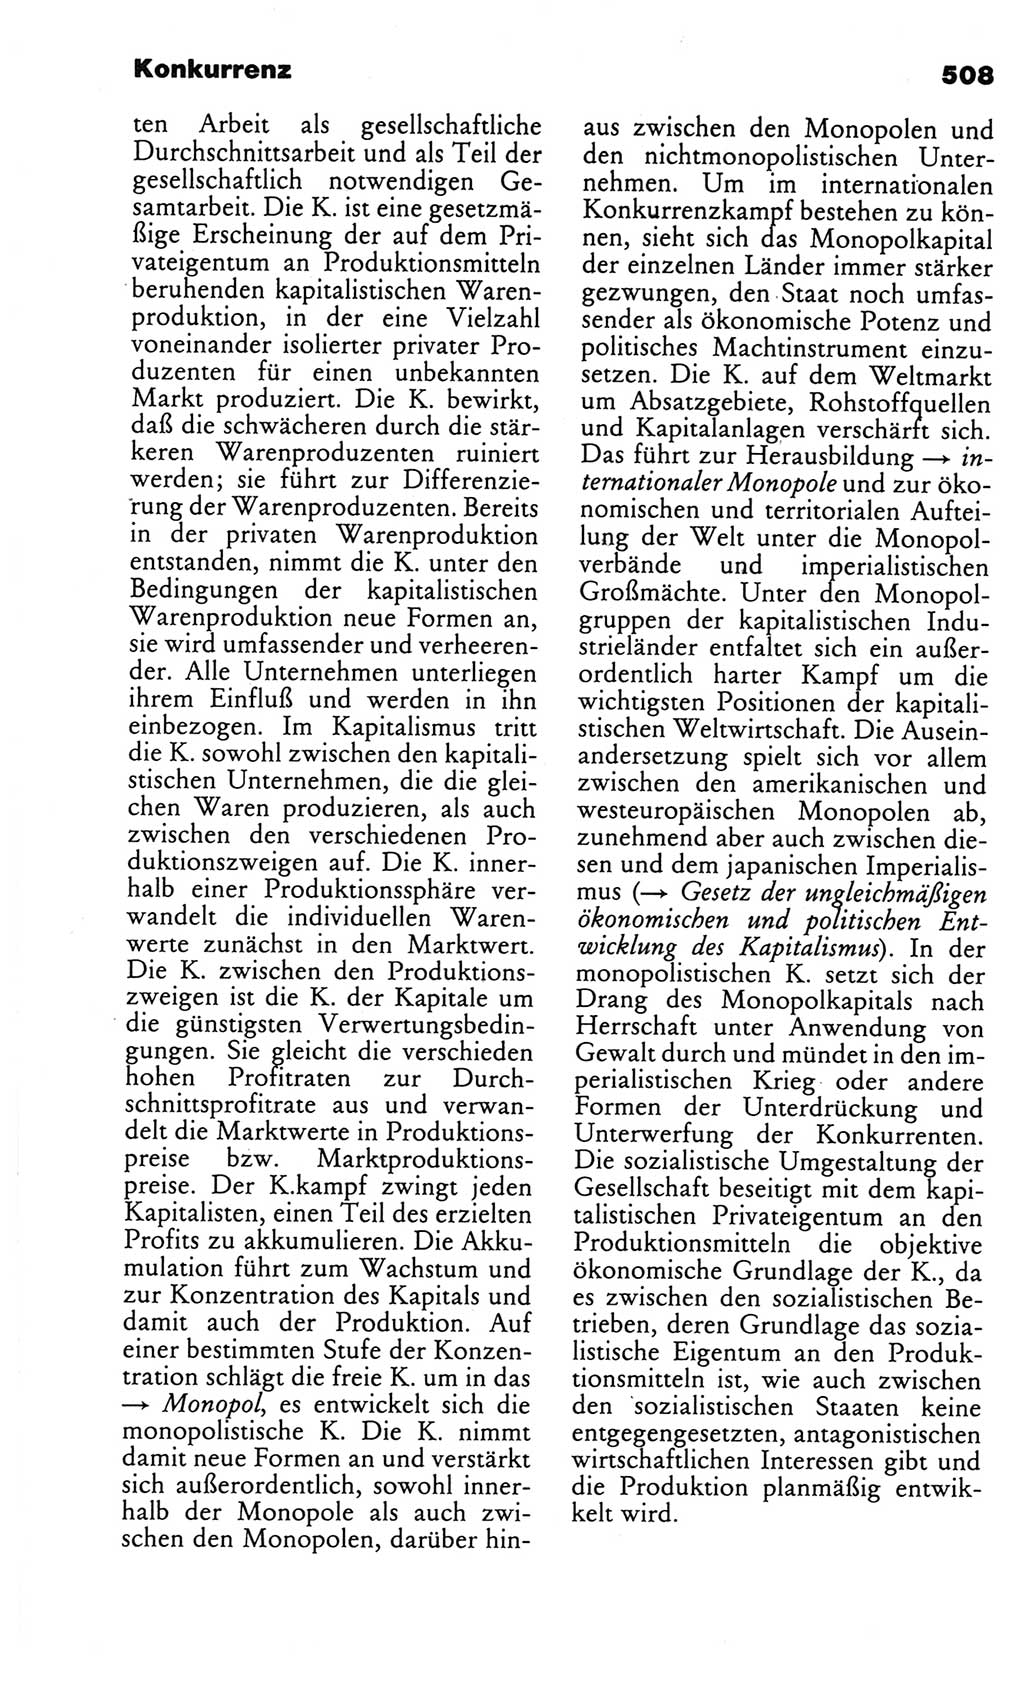 Kleines politisches Wörterbuch [Deutsche Demokratische Republik (DDR)] 1986, Seite 508 (Kl. pol. Wb. DDR 1986, S. 508)